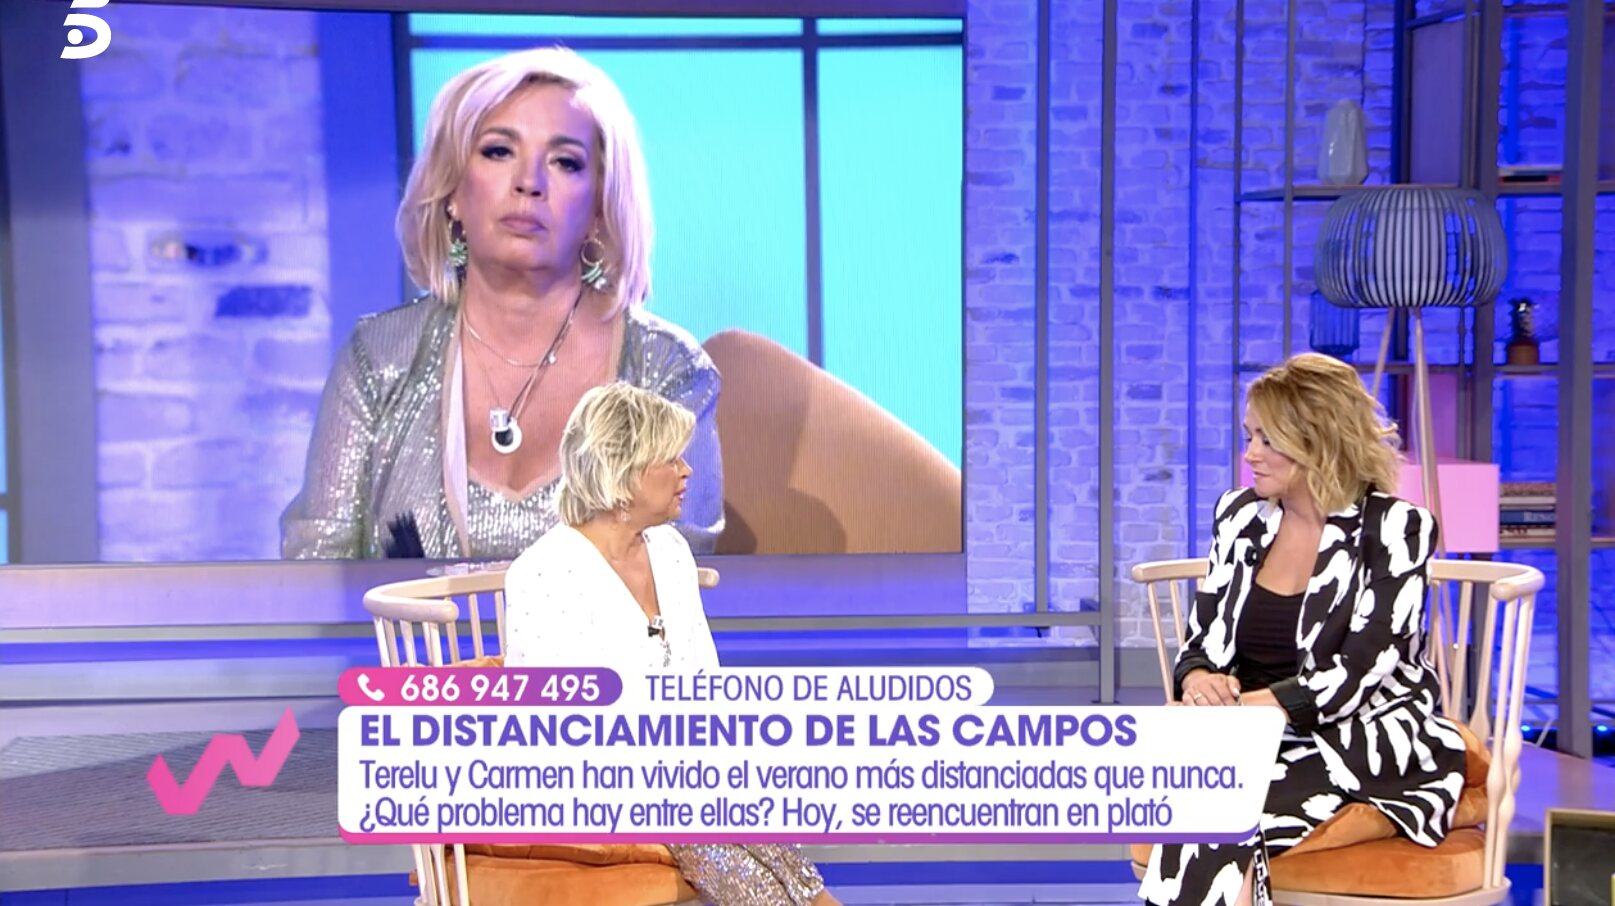 Terelu Campos, muy dolida por tener que hacer frente en un plató a un problema familiar | Foto: Telecinco.es